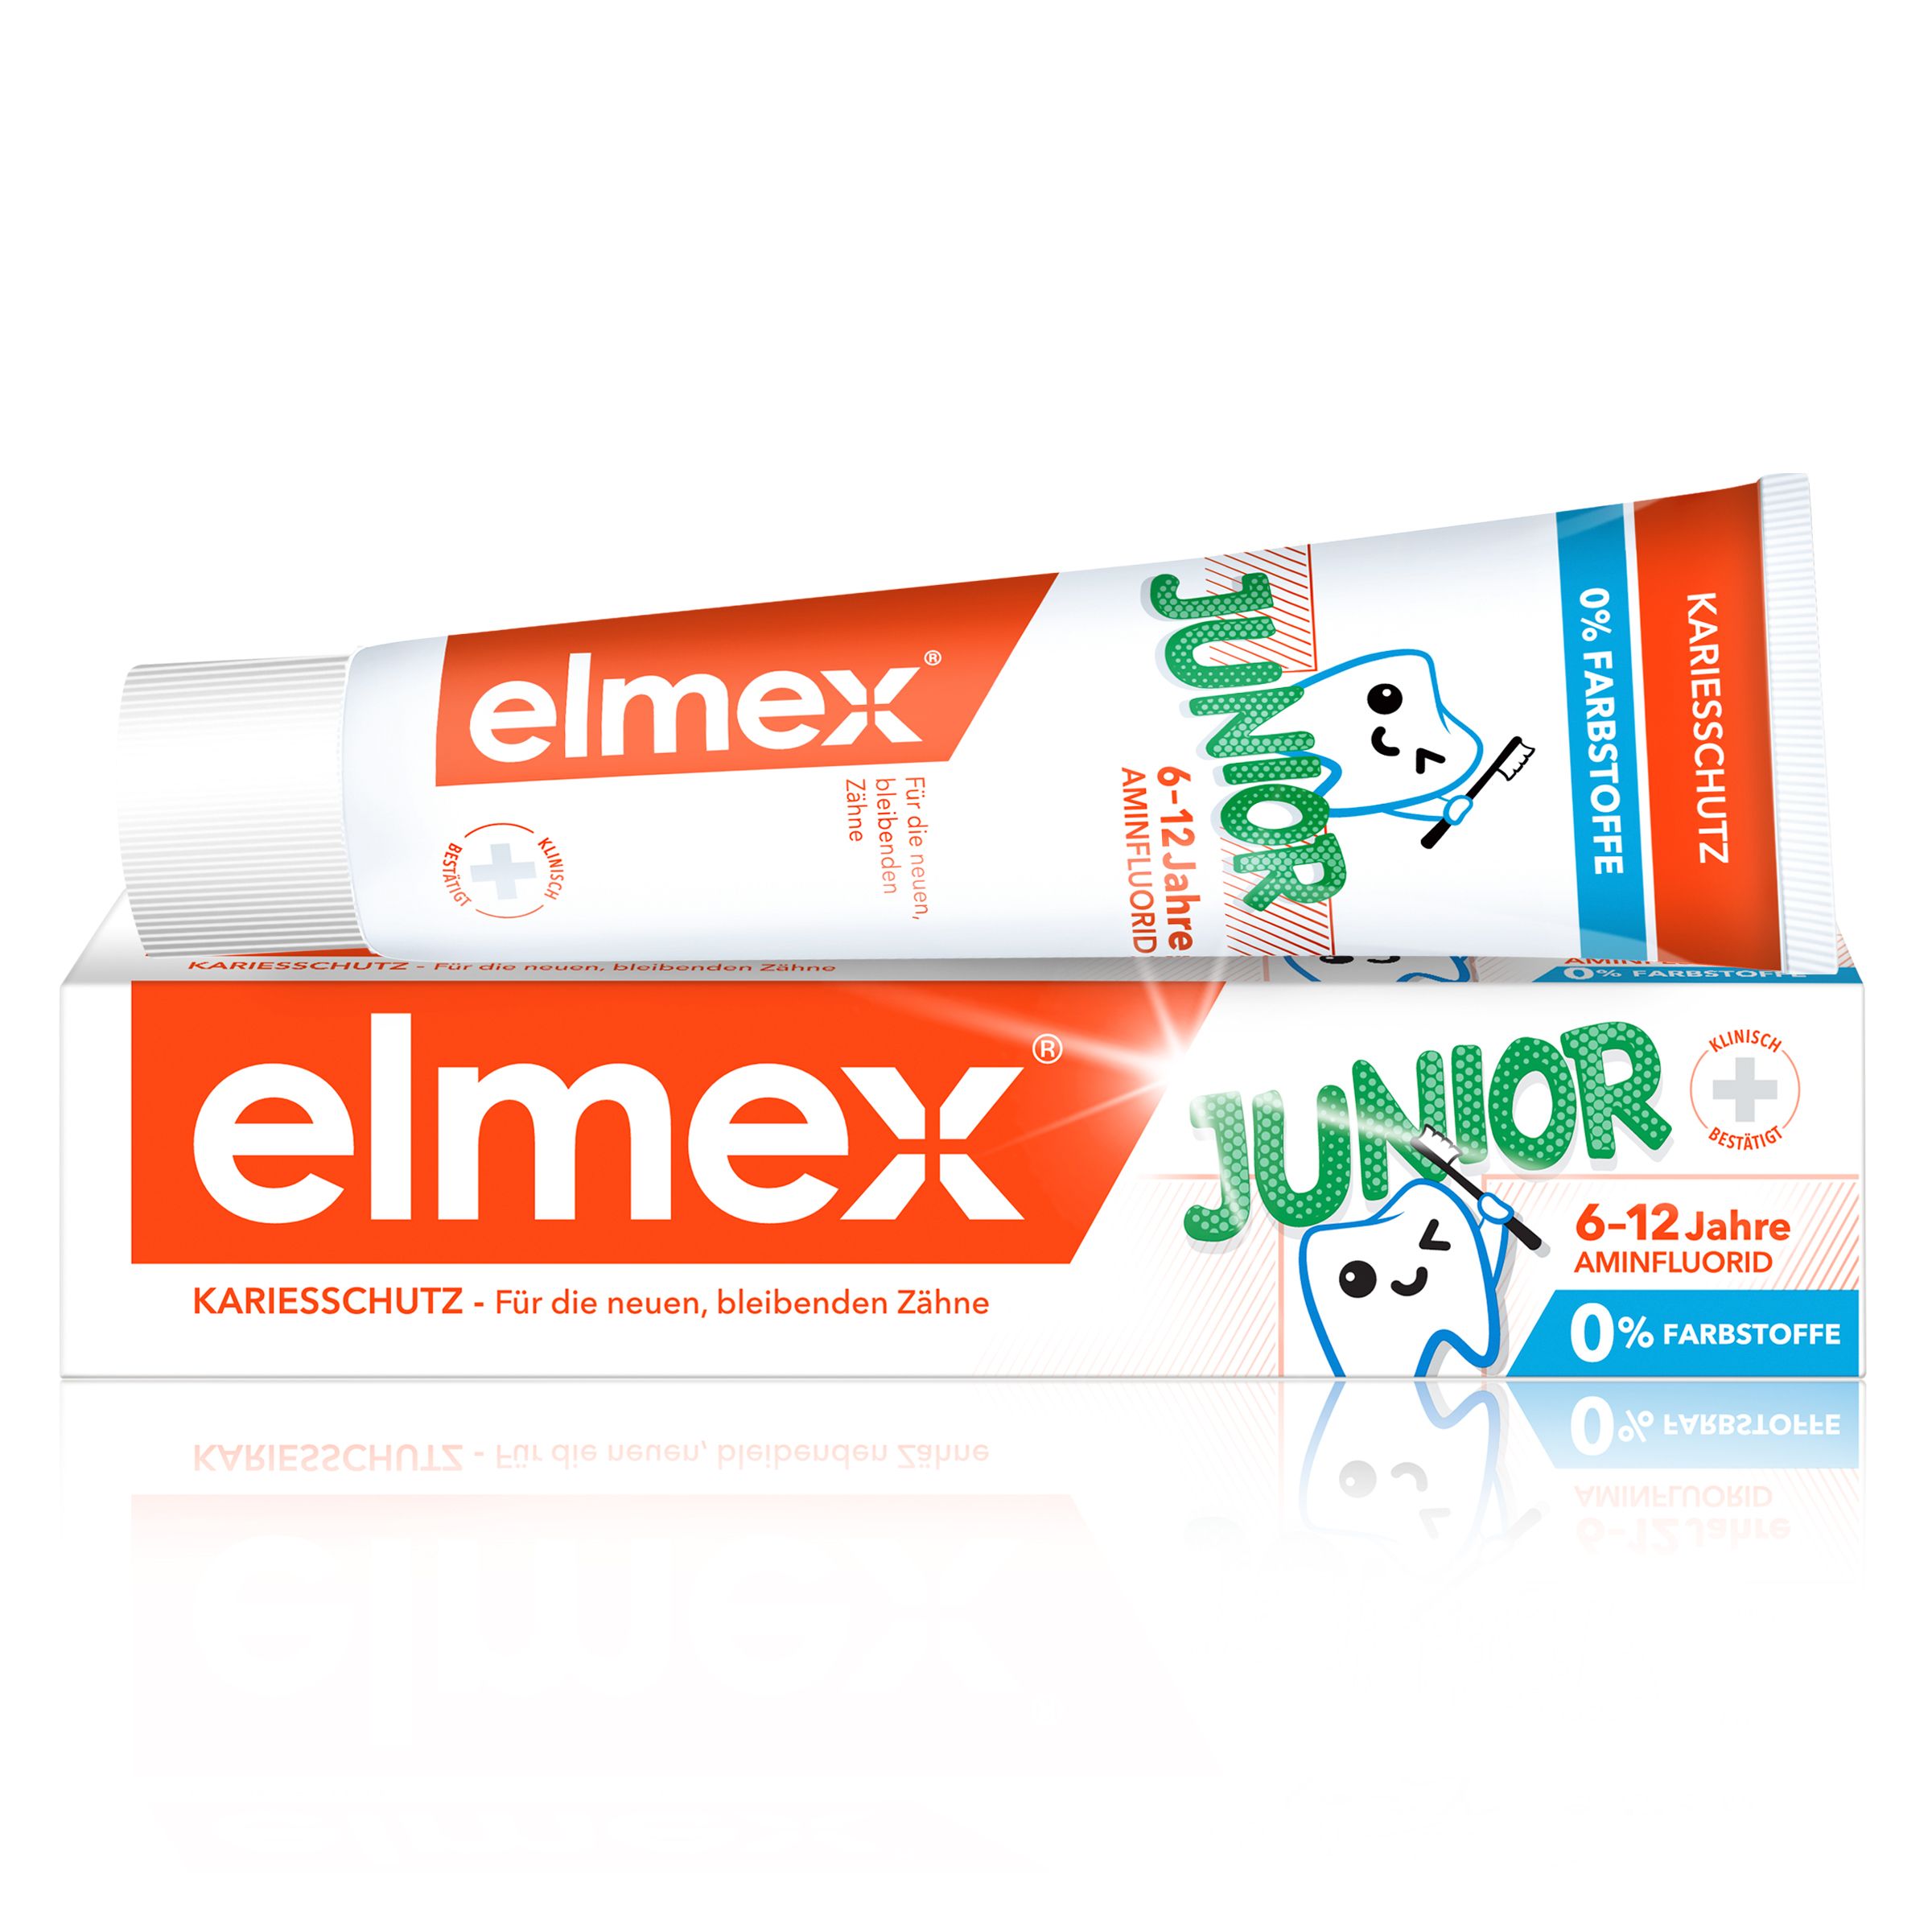 elmex Junior 6-12 Jahre Kinder-Zahnpasta